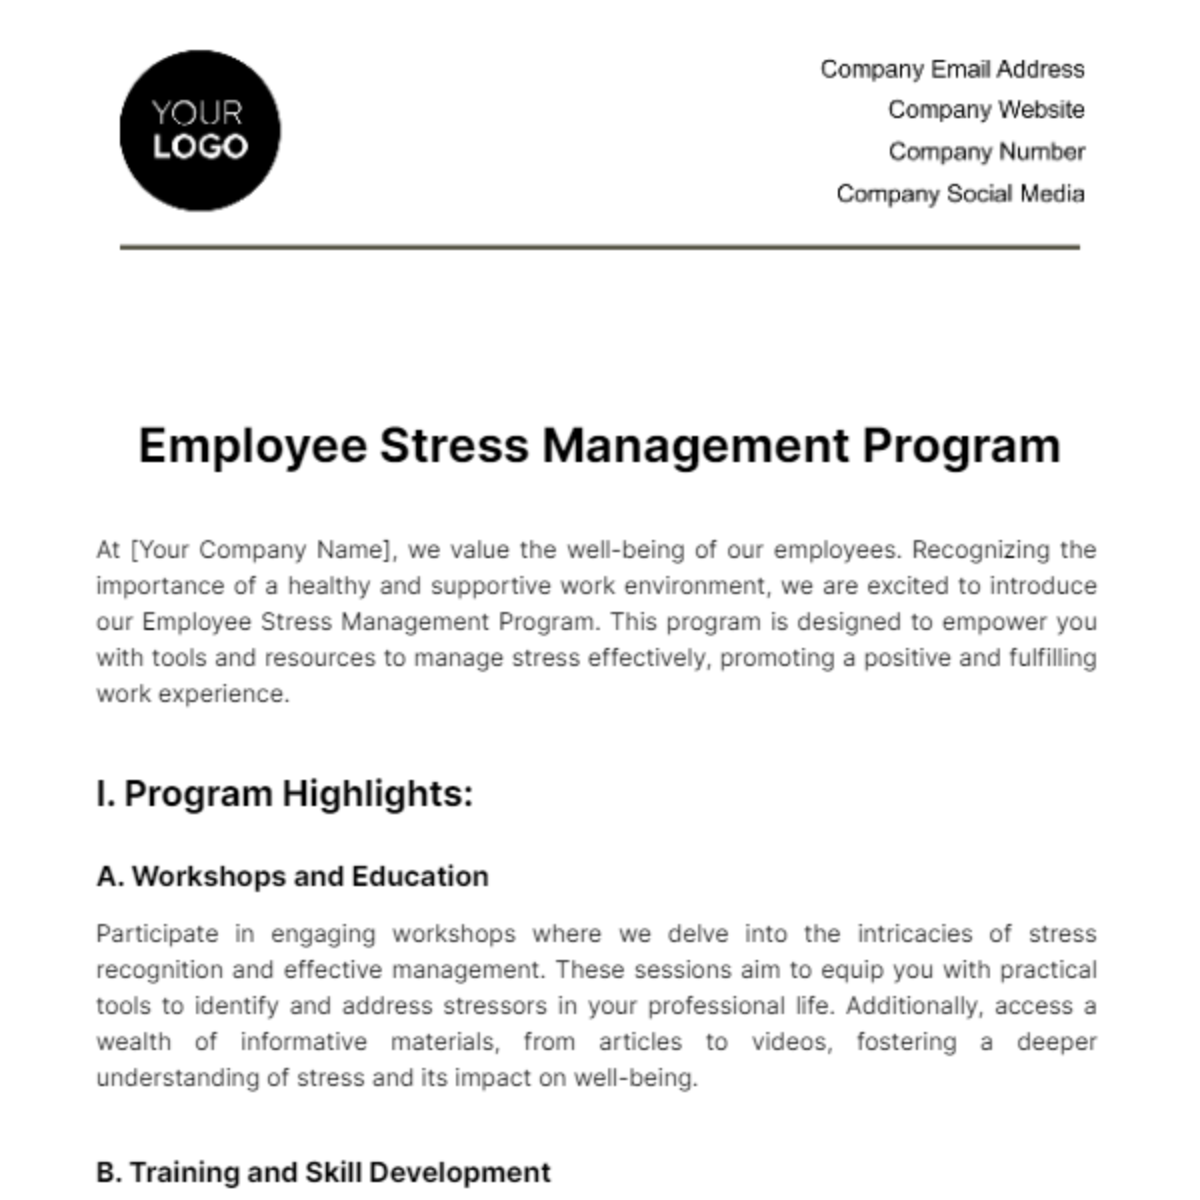 Employee Stress Management Program Template